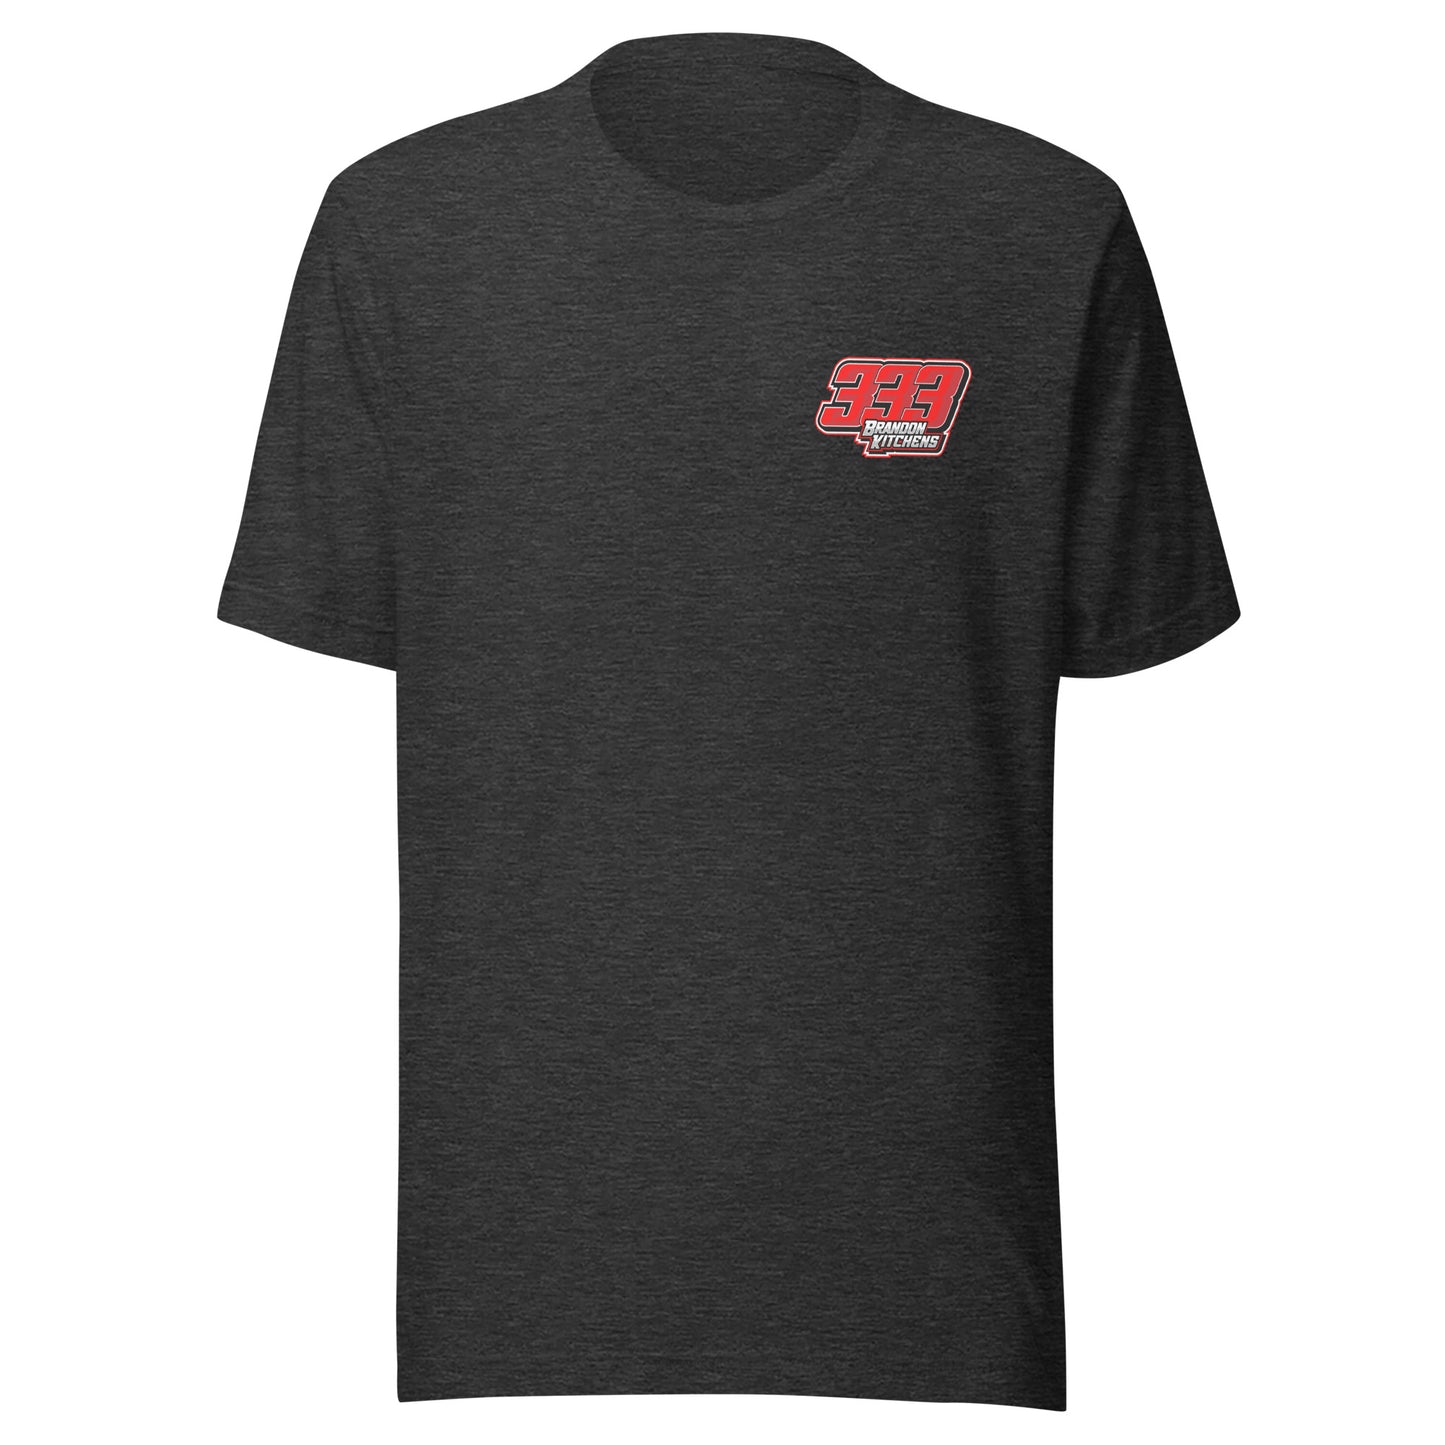 Brandon Kitchens 333 T-Shirt